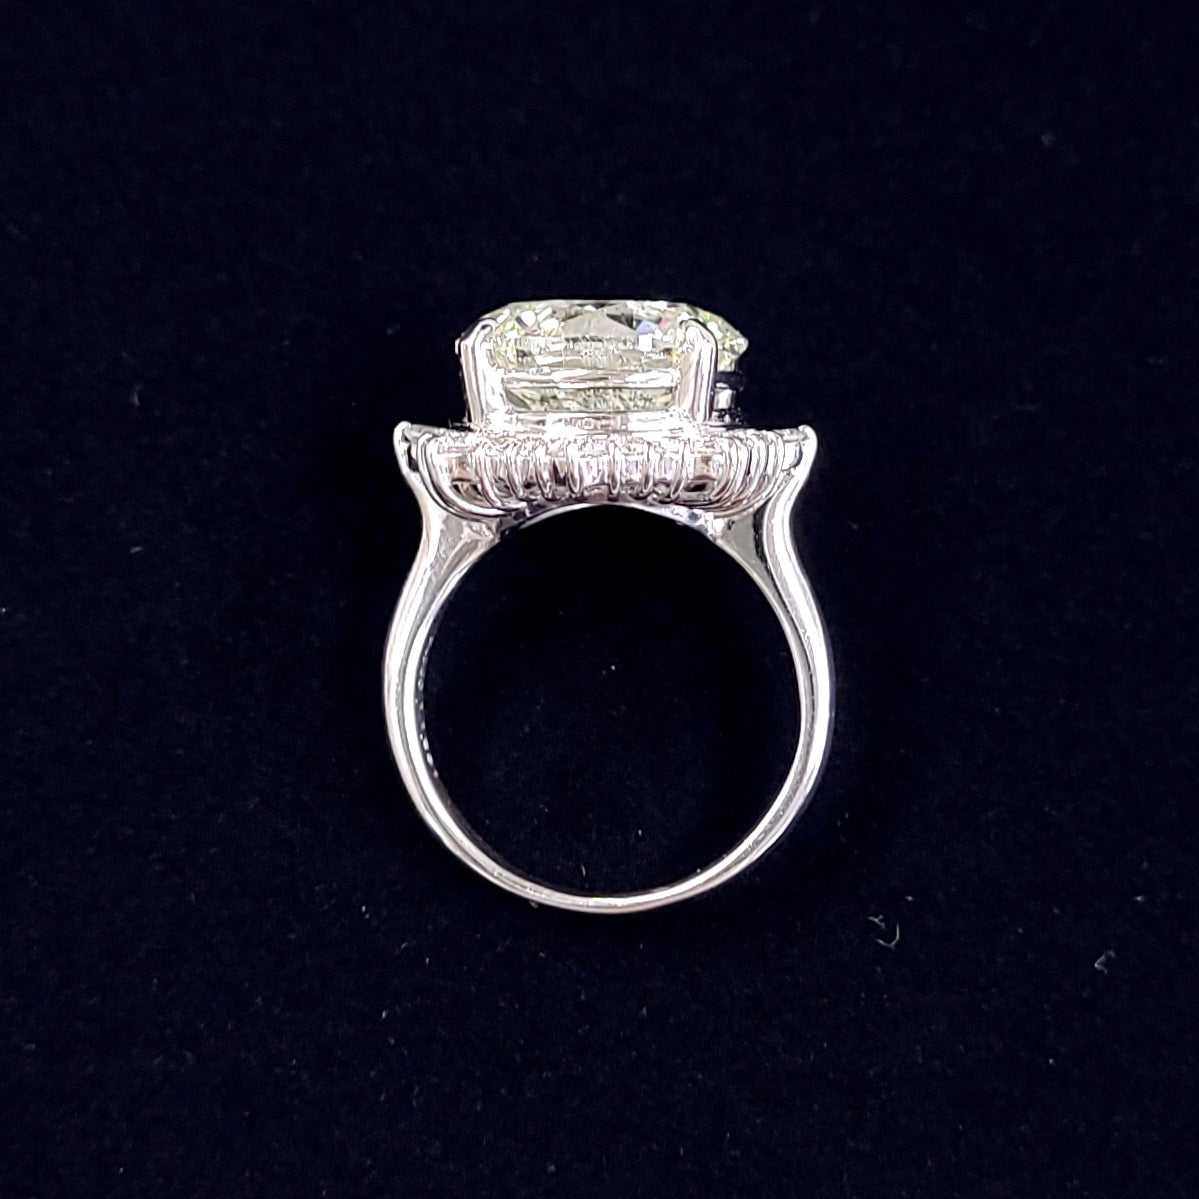 11.231 克拉 K 色天然钻石 GOOD 铂金 Pt900 六爪戒指，镶四月诞生石 [附证书]。